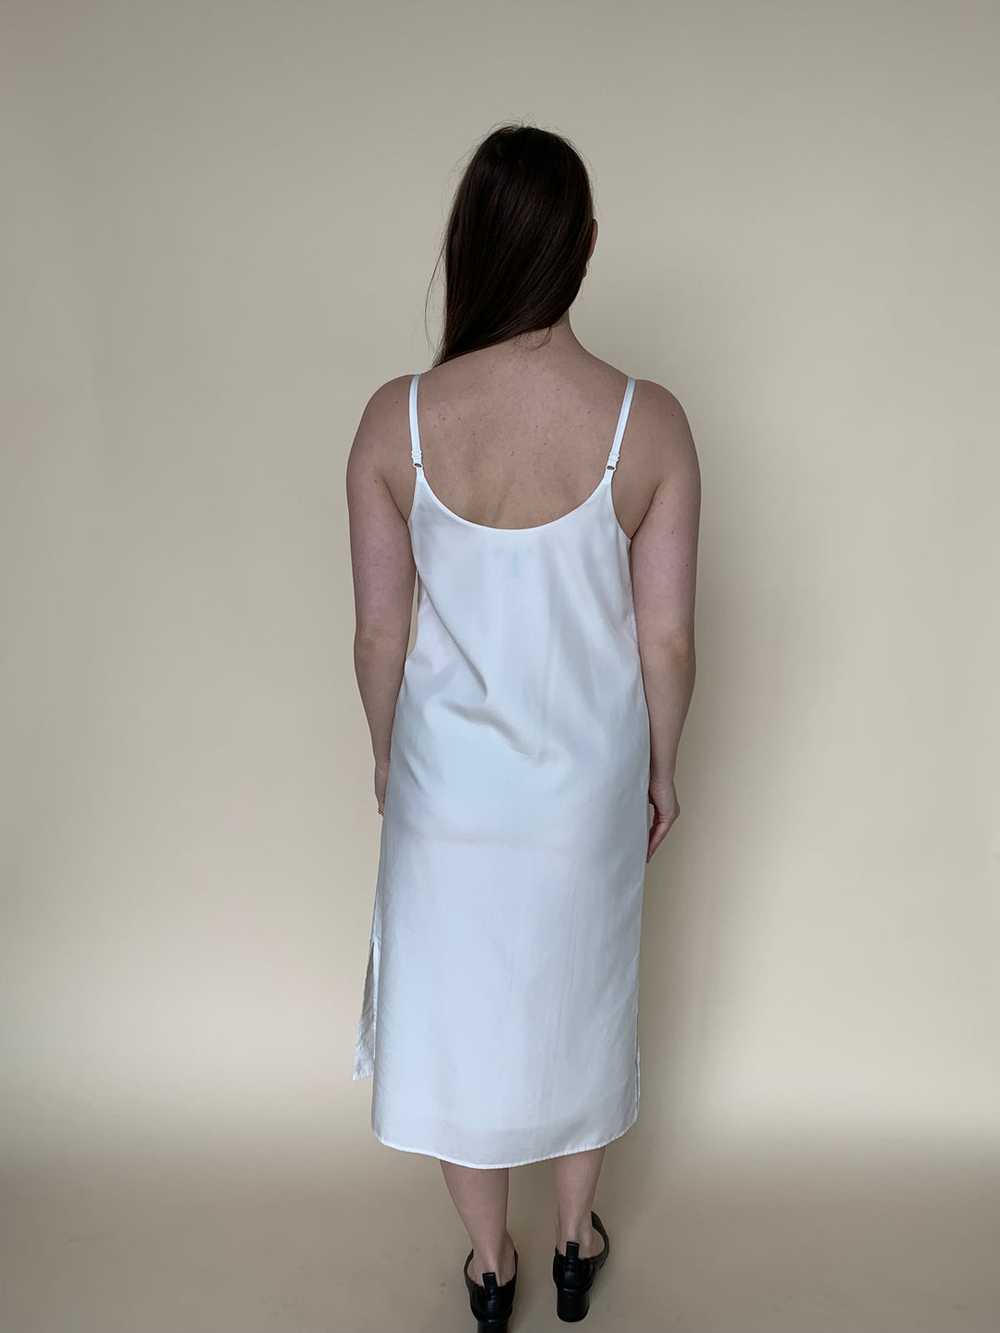 Eileen Fisher white slip dress - image 5